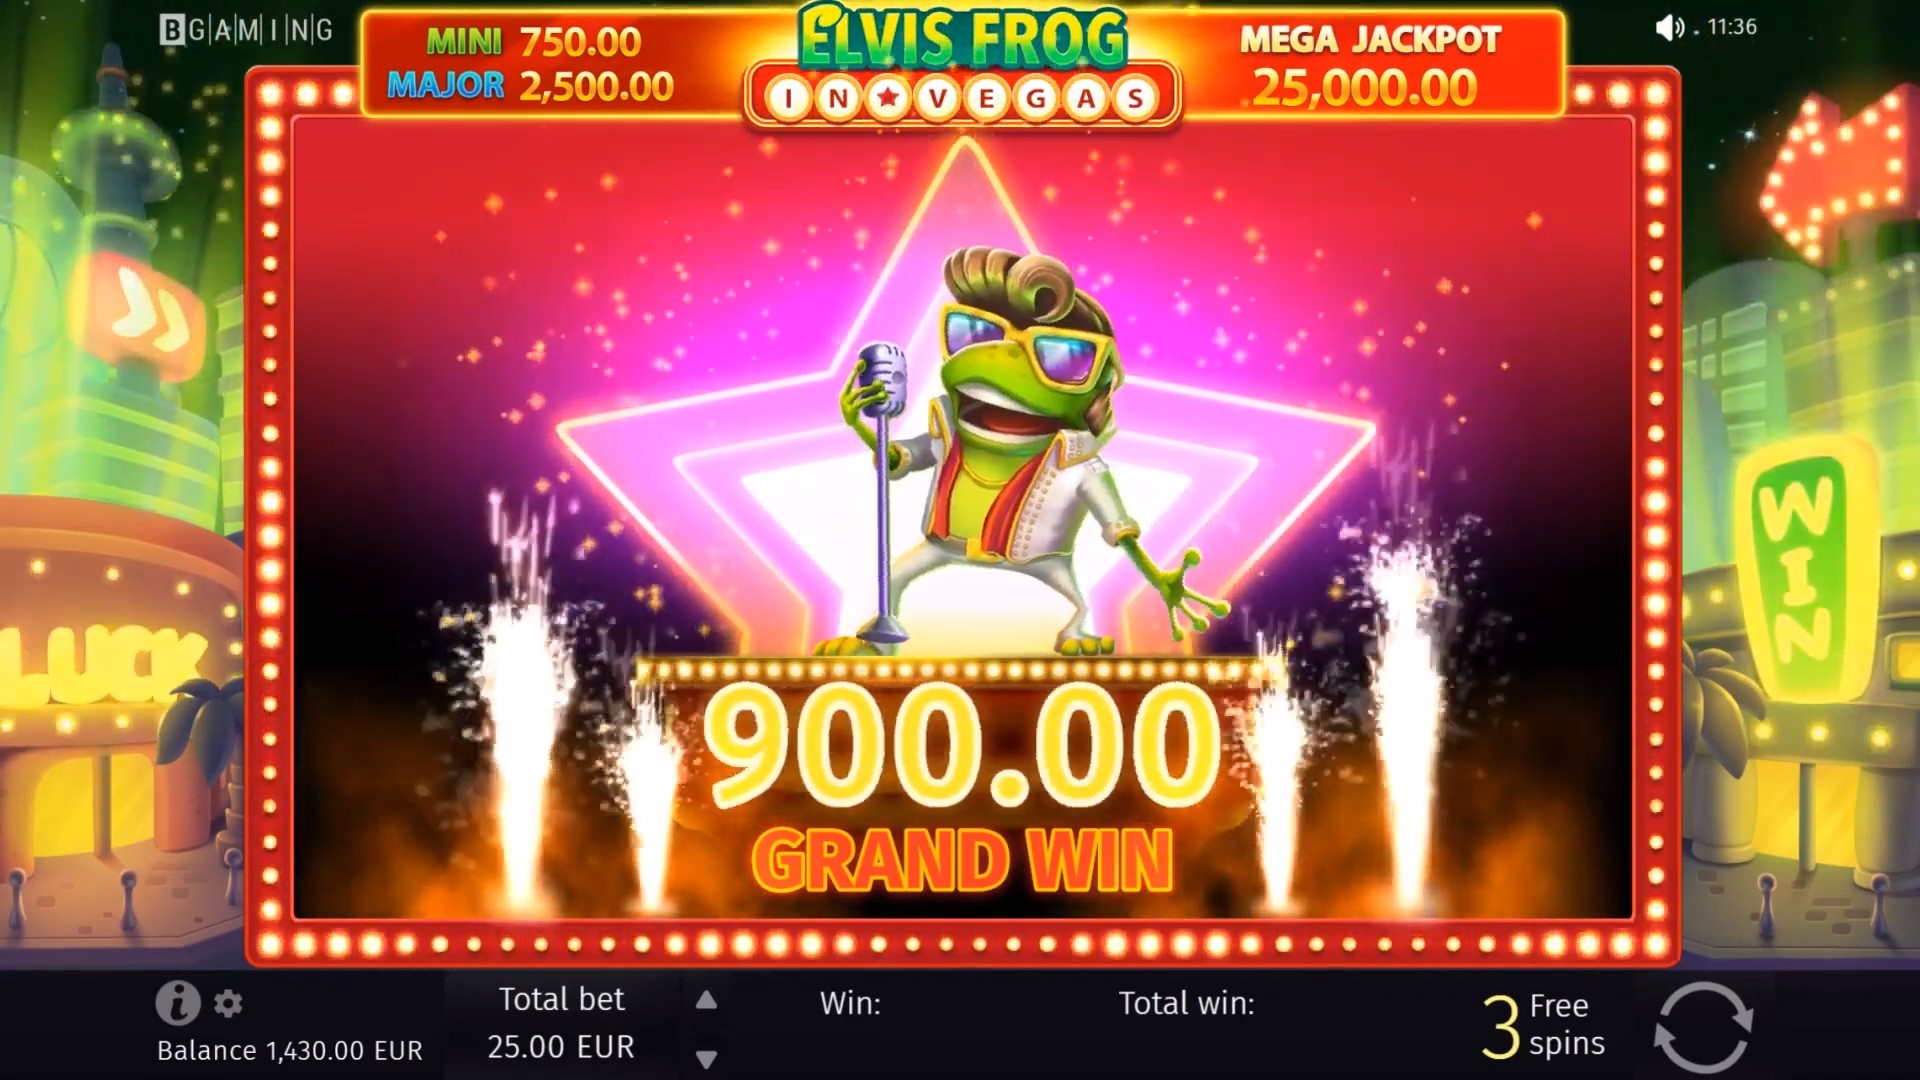 Elvis Frog in Vegas 6 BGaming